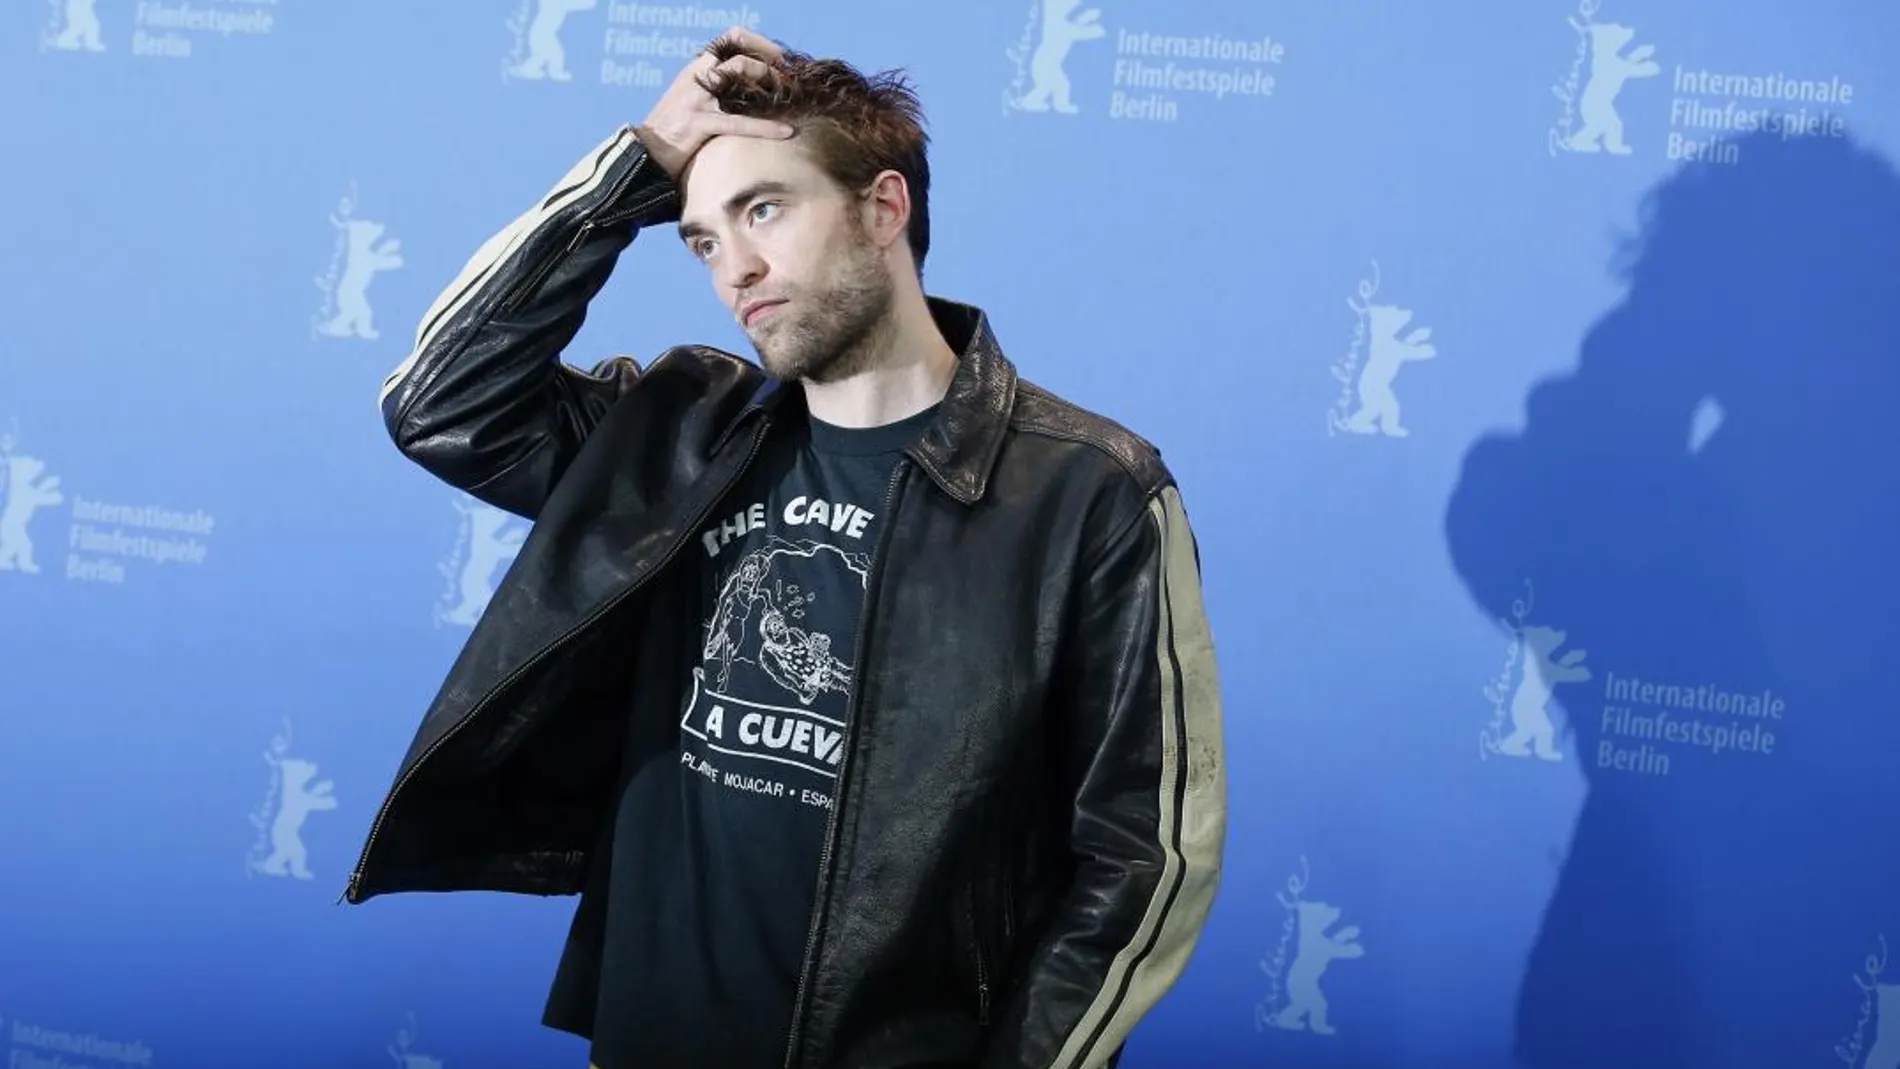 Robert Pattinson durante un momento de la rueda de Prensa en Berlín